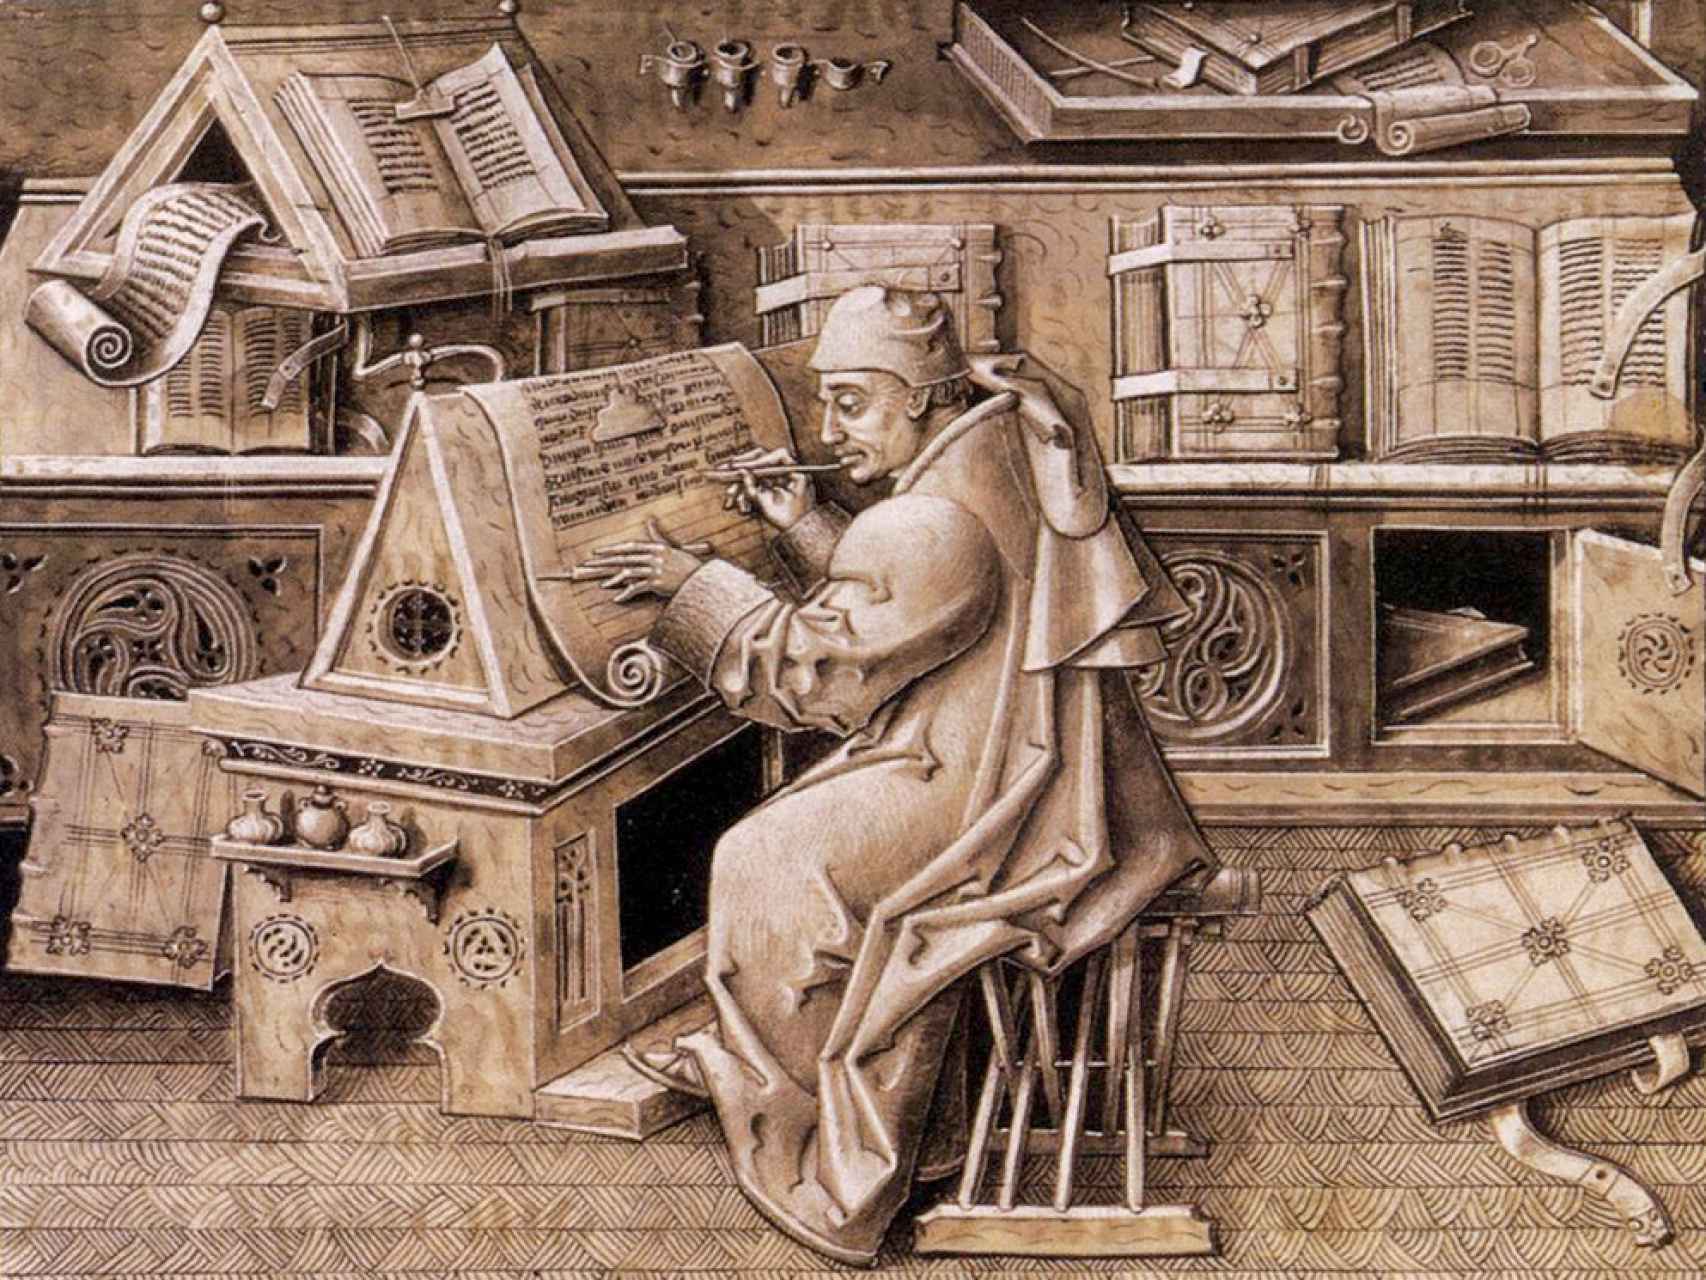 Un escribano medieval traduciendo un libro